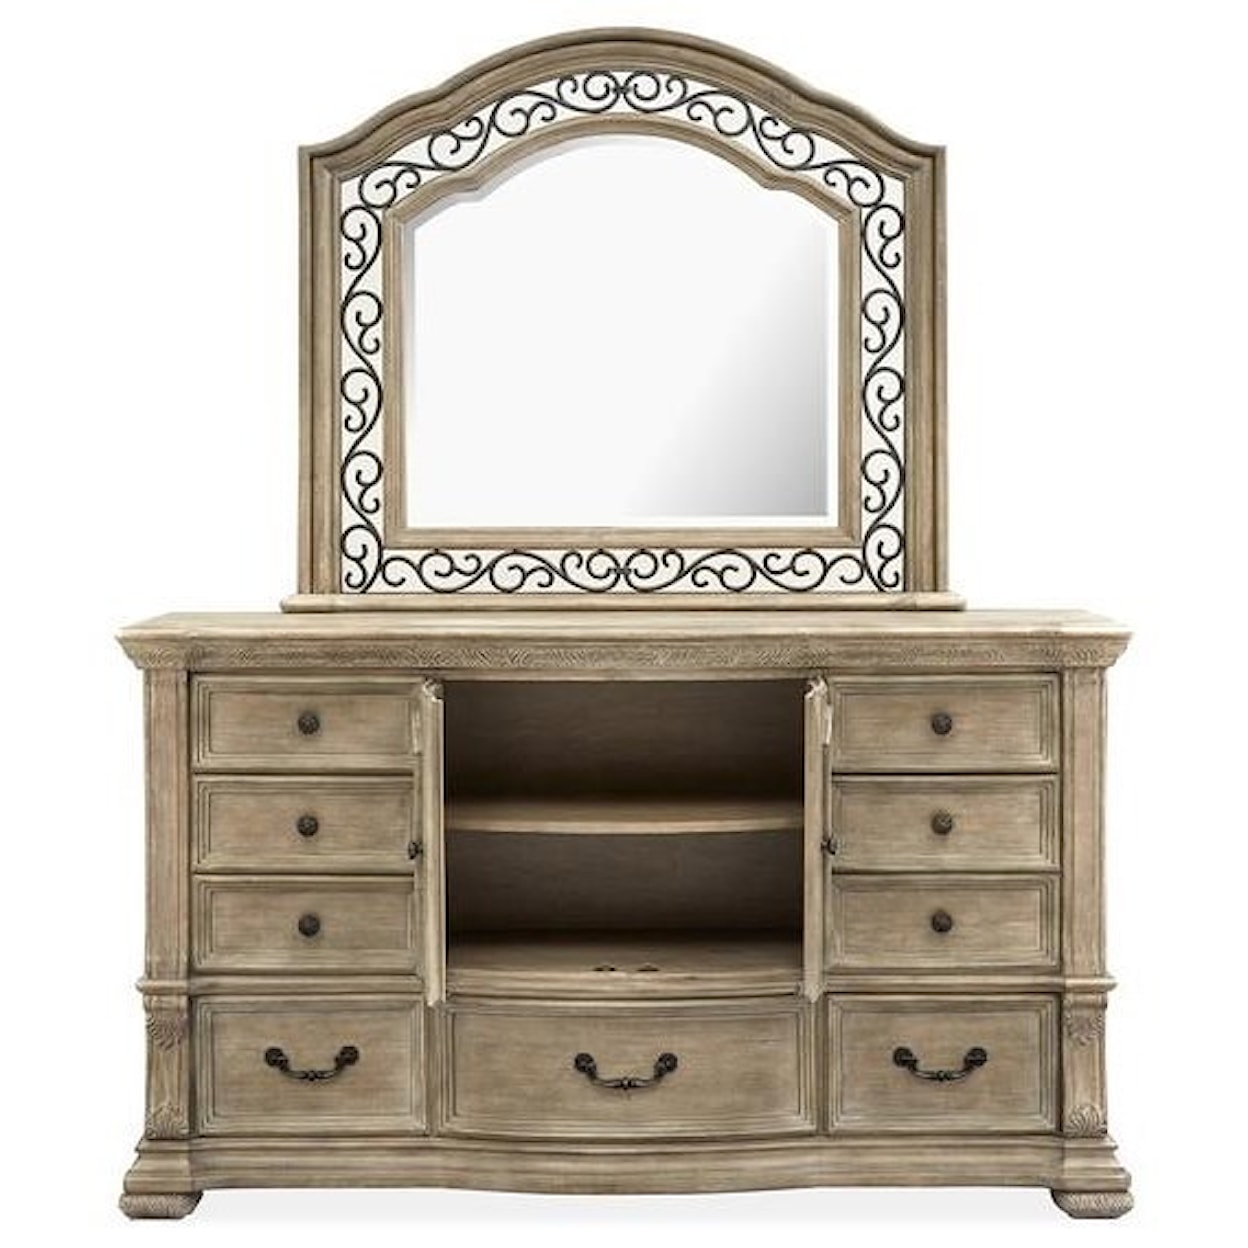 Magnussen Home Marisol Bedroom Dresser and Mirror Set